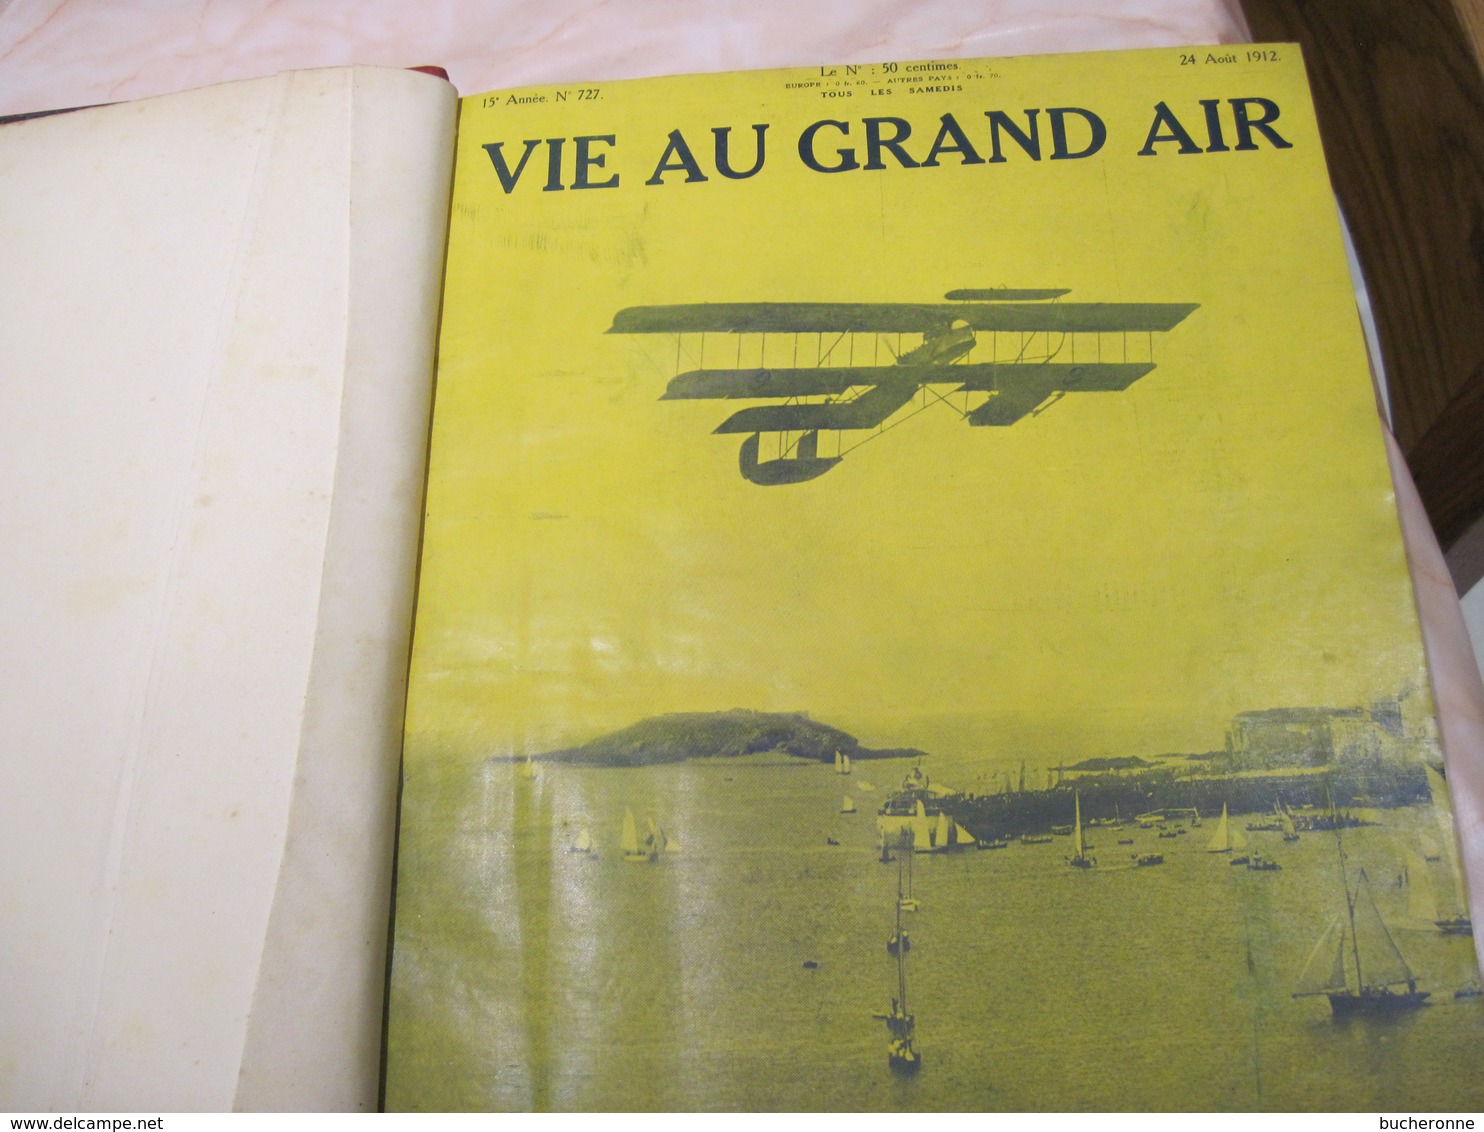 La Vie au grand air 1912 année complète 5 KG 1016 pages 35 x 28 x 6 cm  TBE couverture rayure page pli minime vu son age